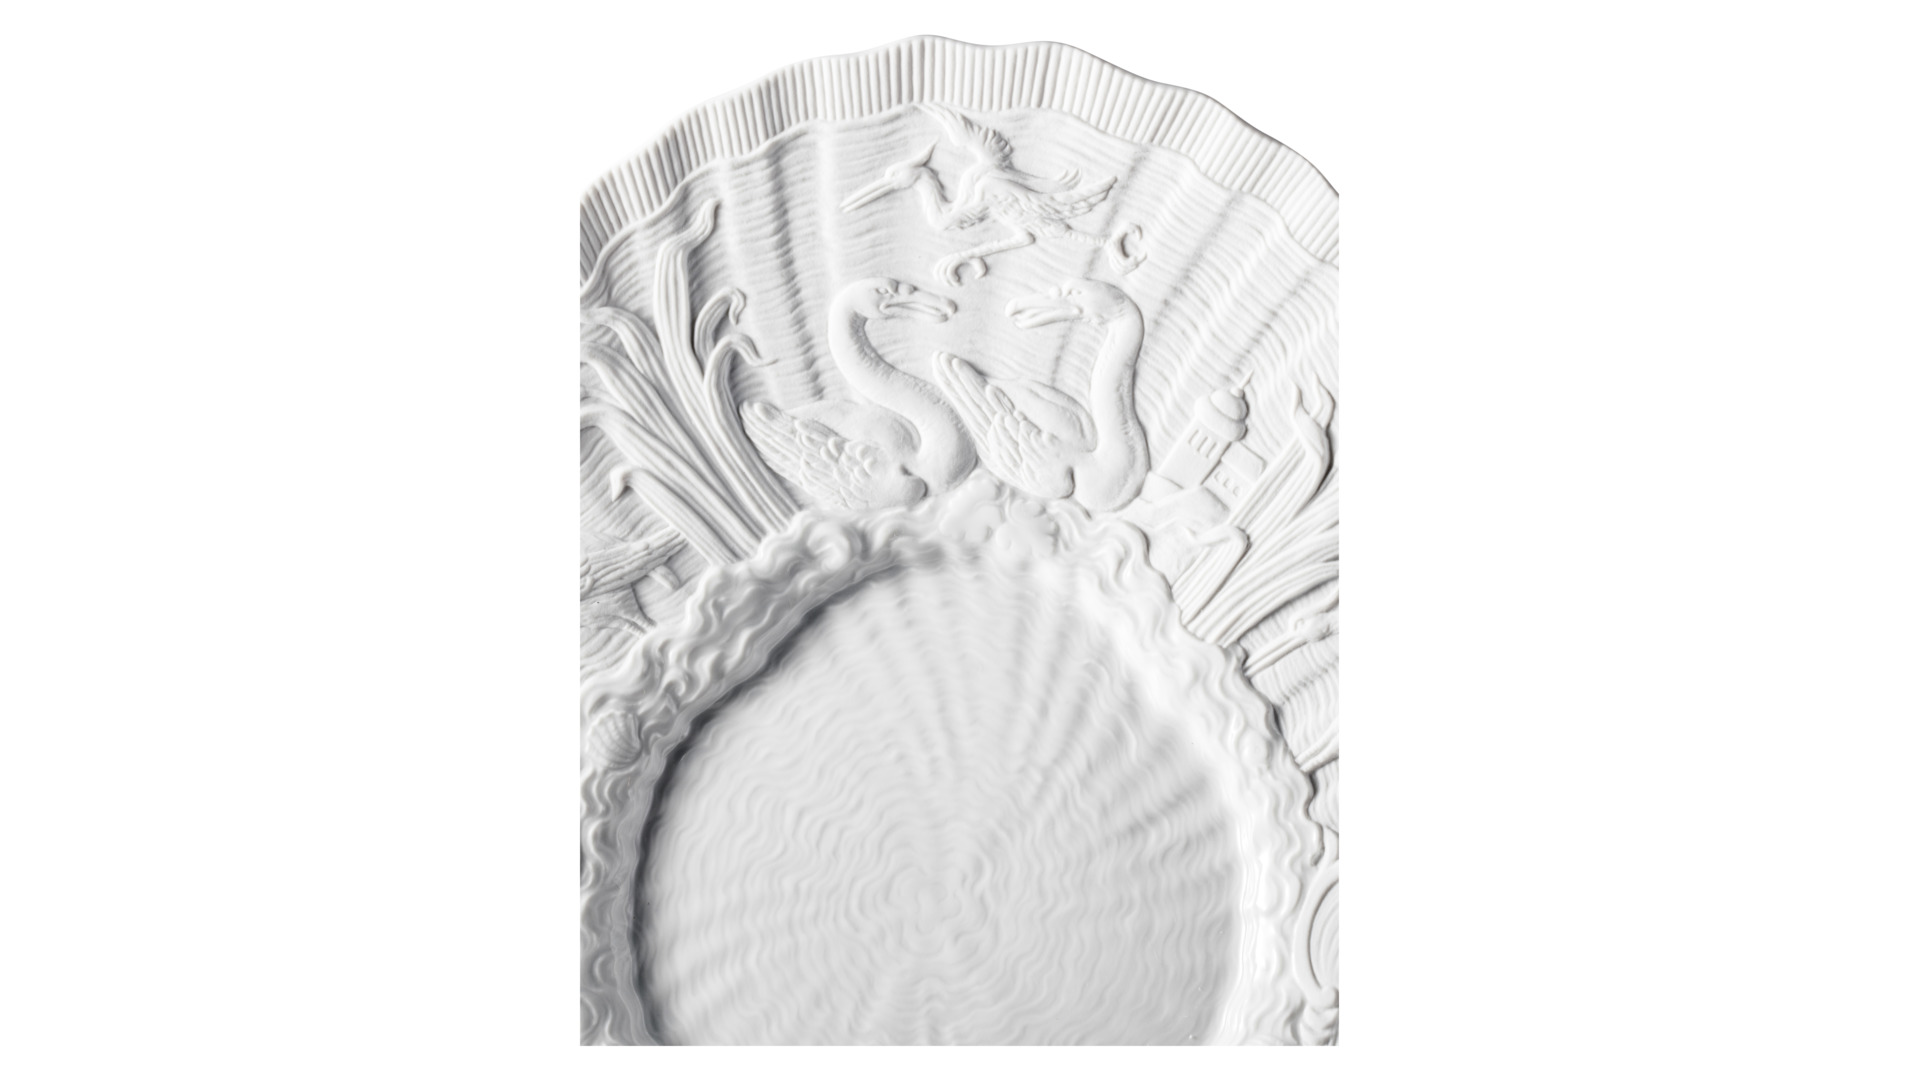 Блюдо Meissen Лебединый сервиз Белый бисквит 30 см, фарфор